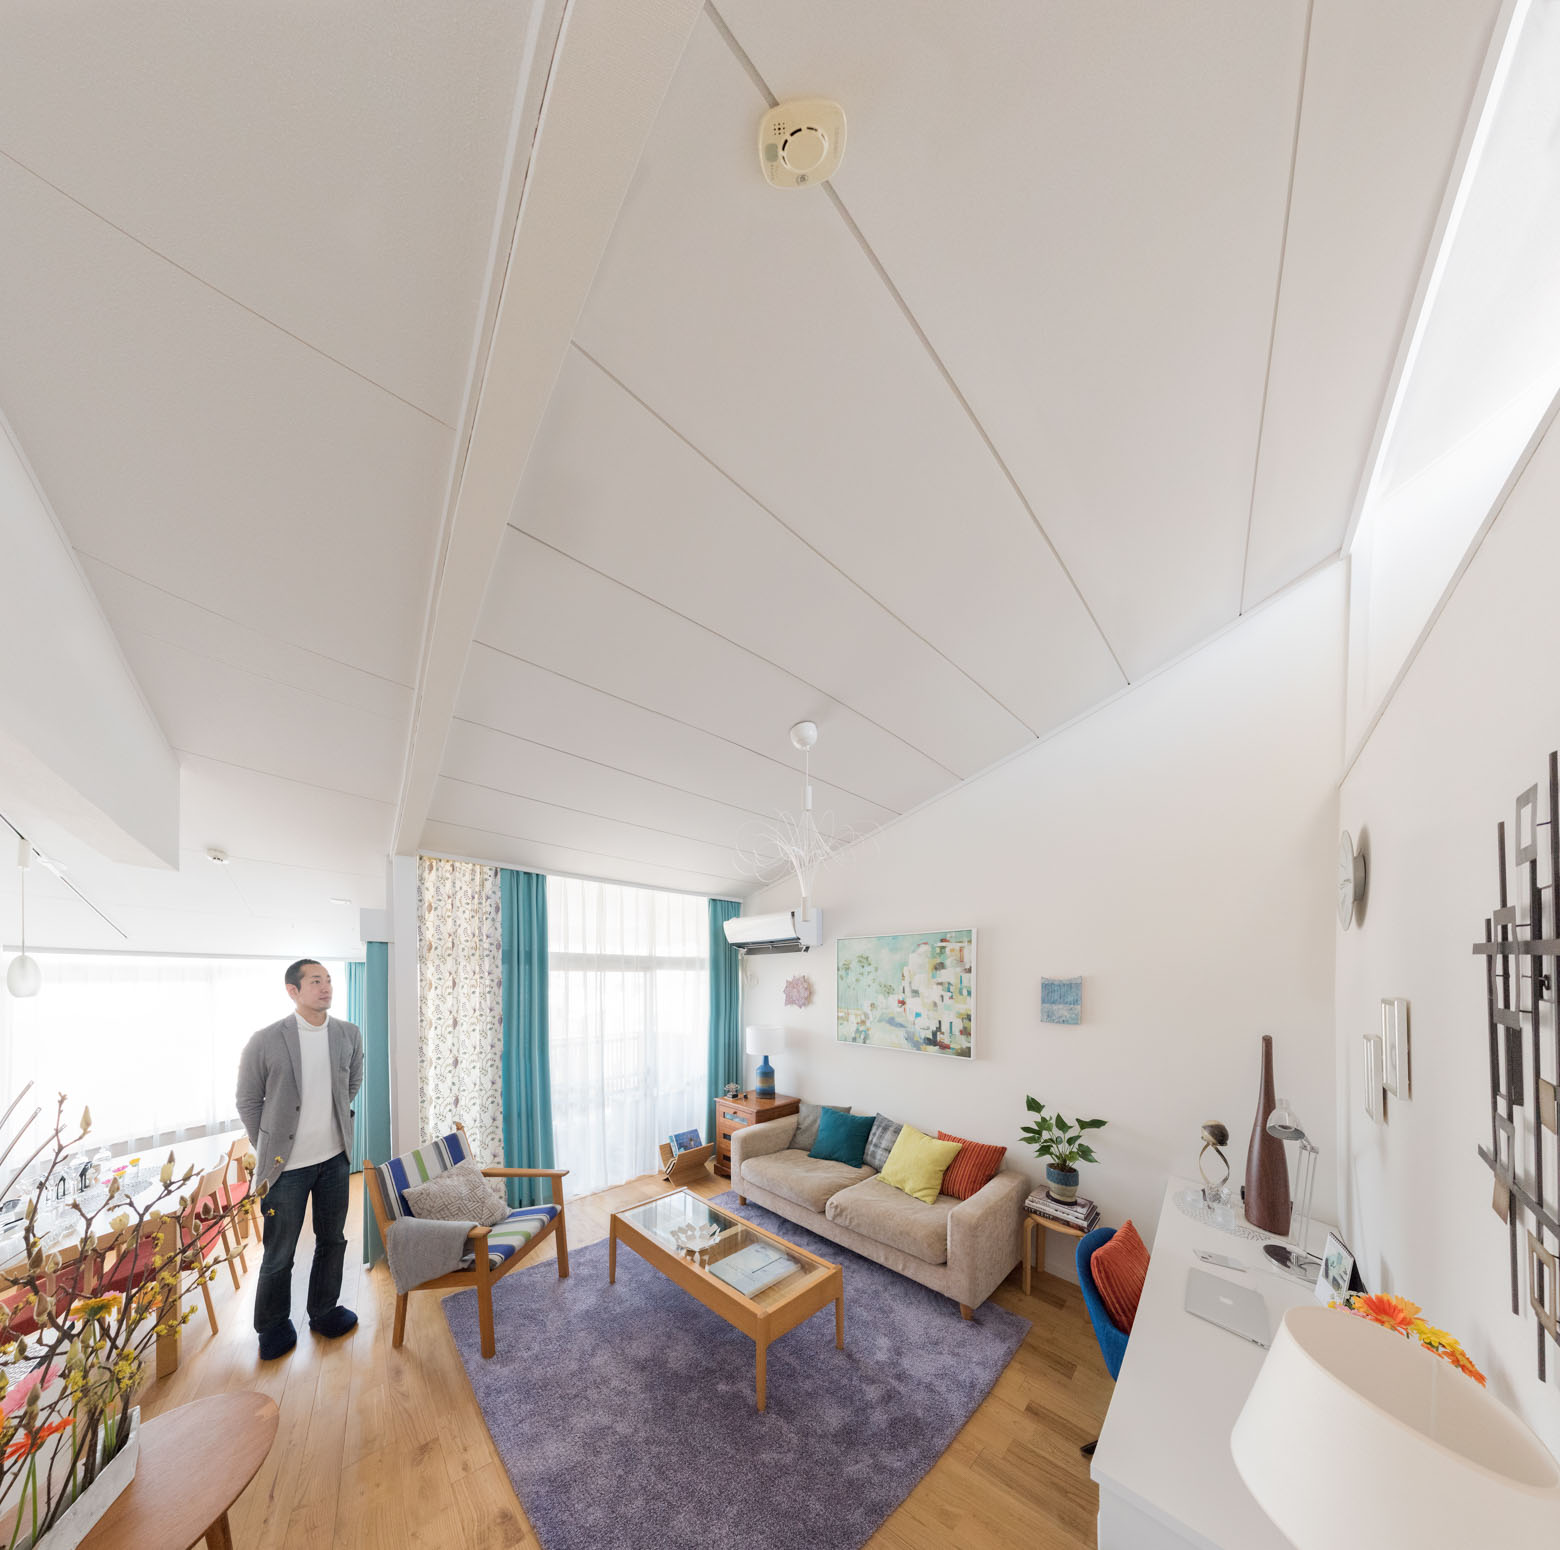 山口さんご夫妻のお部屋は、天井の高いリビングに絶妙なカラーコーディネートがされているのが印象的。